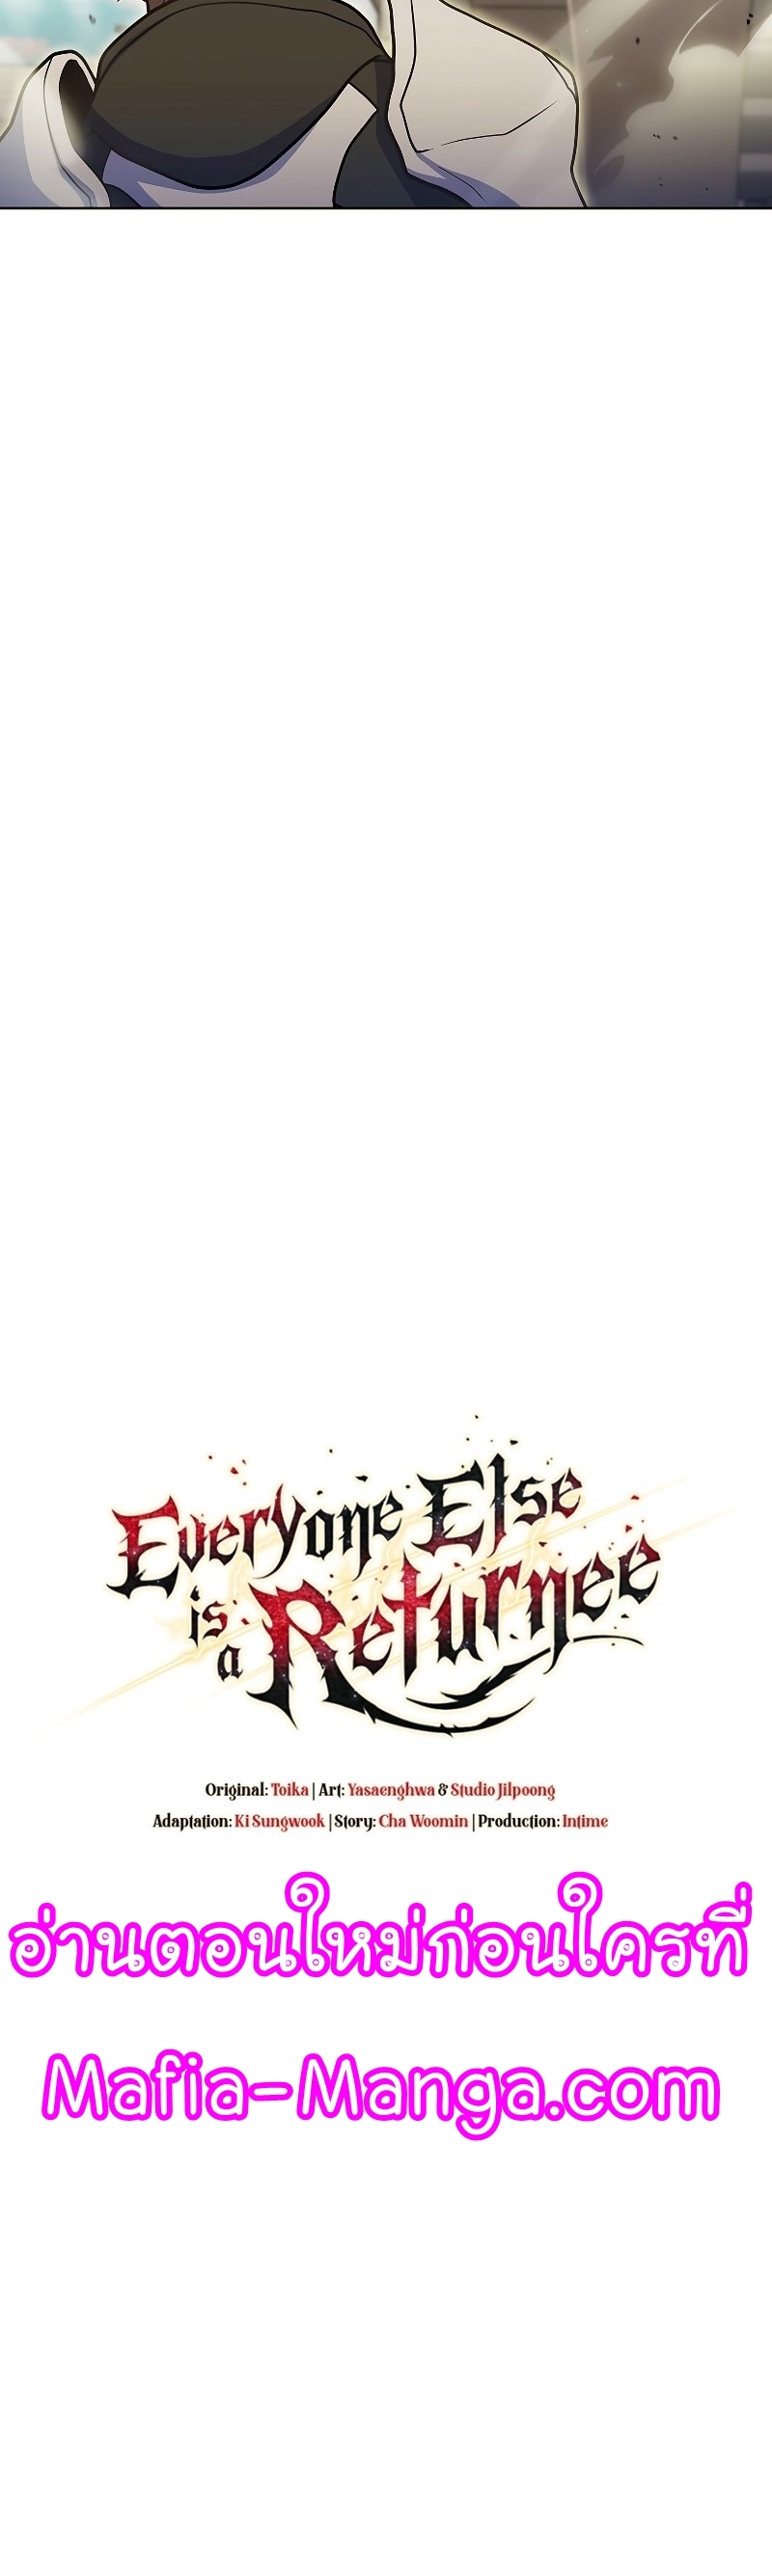 Everyone Else is A Returnee 35 22